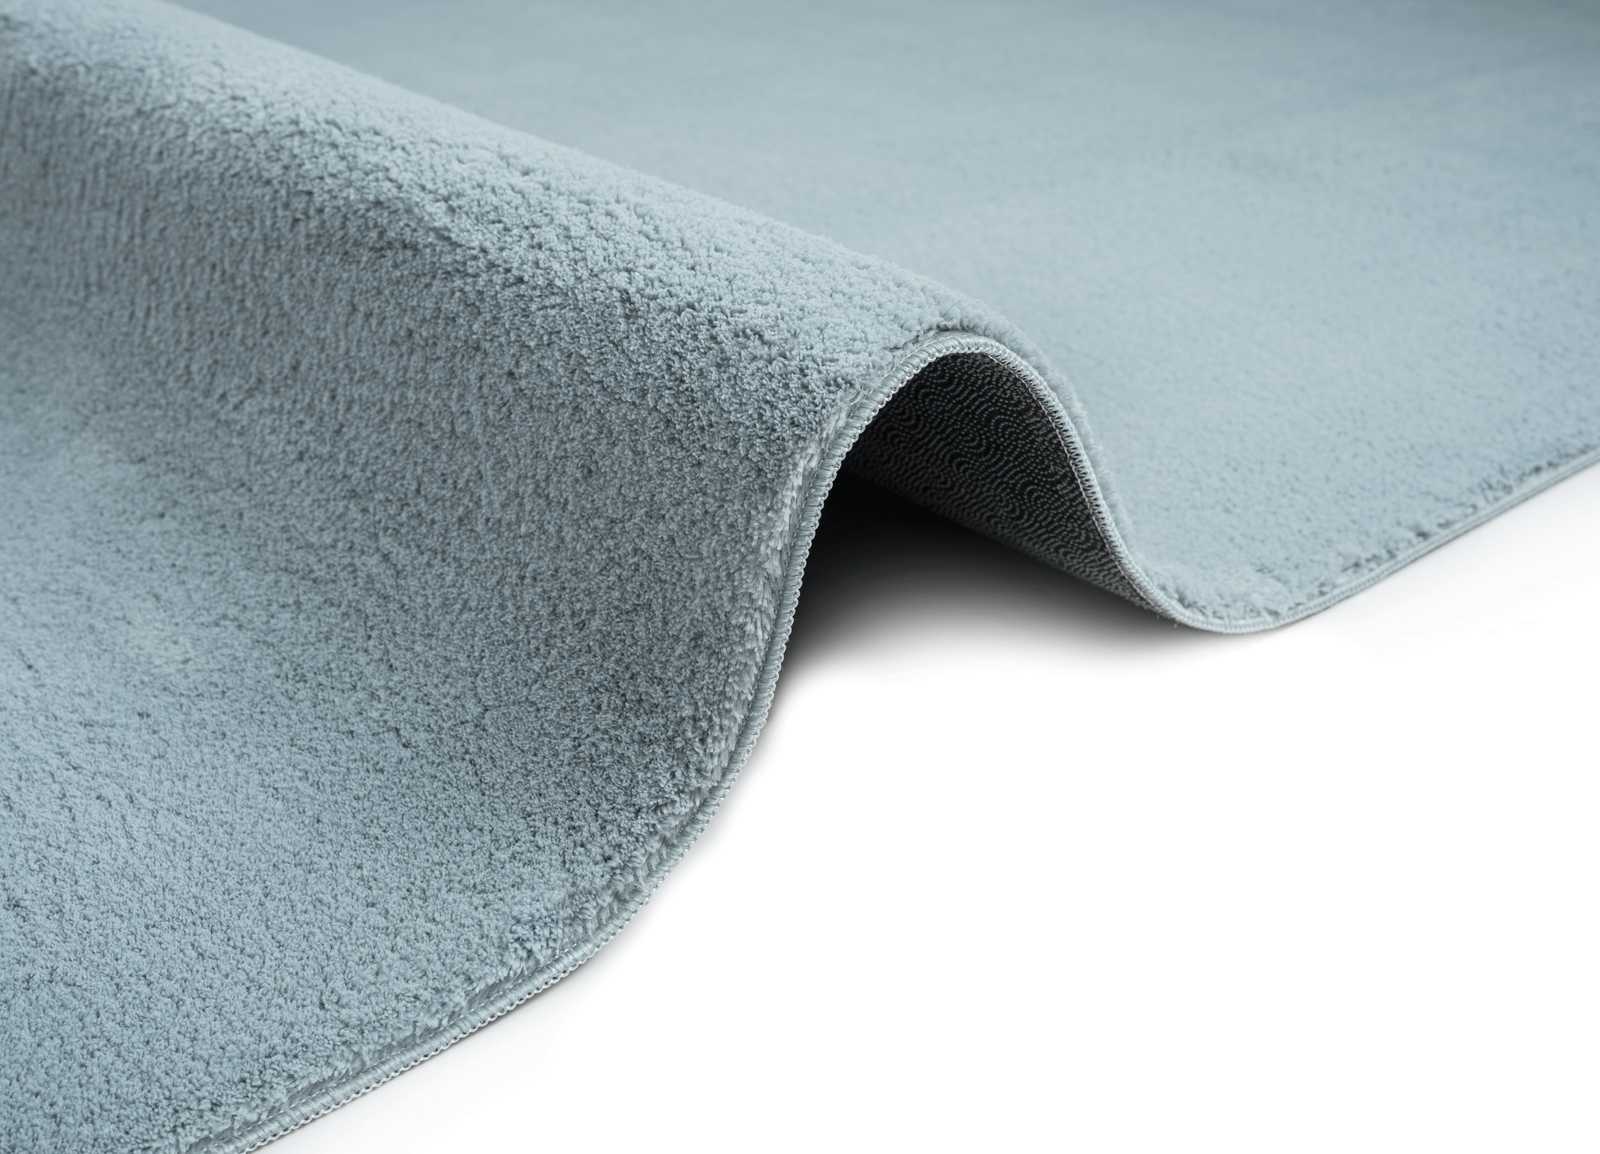             Flauschiger Hochflor Teppich in Blau – 150 x 80 cm
        